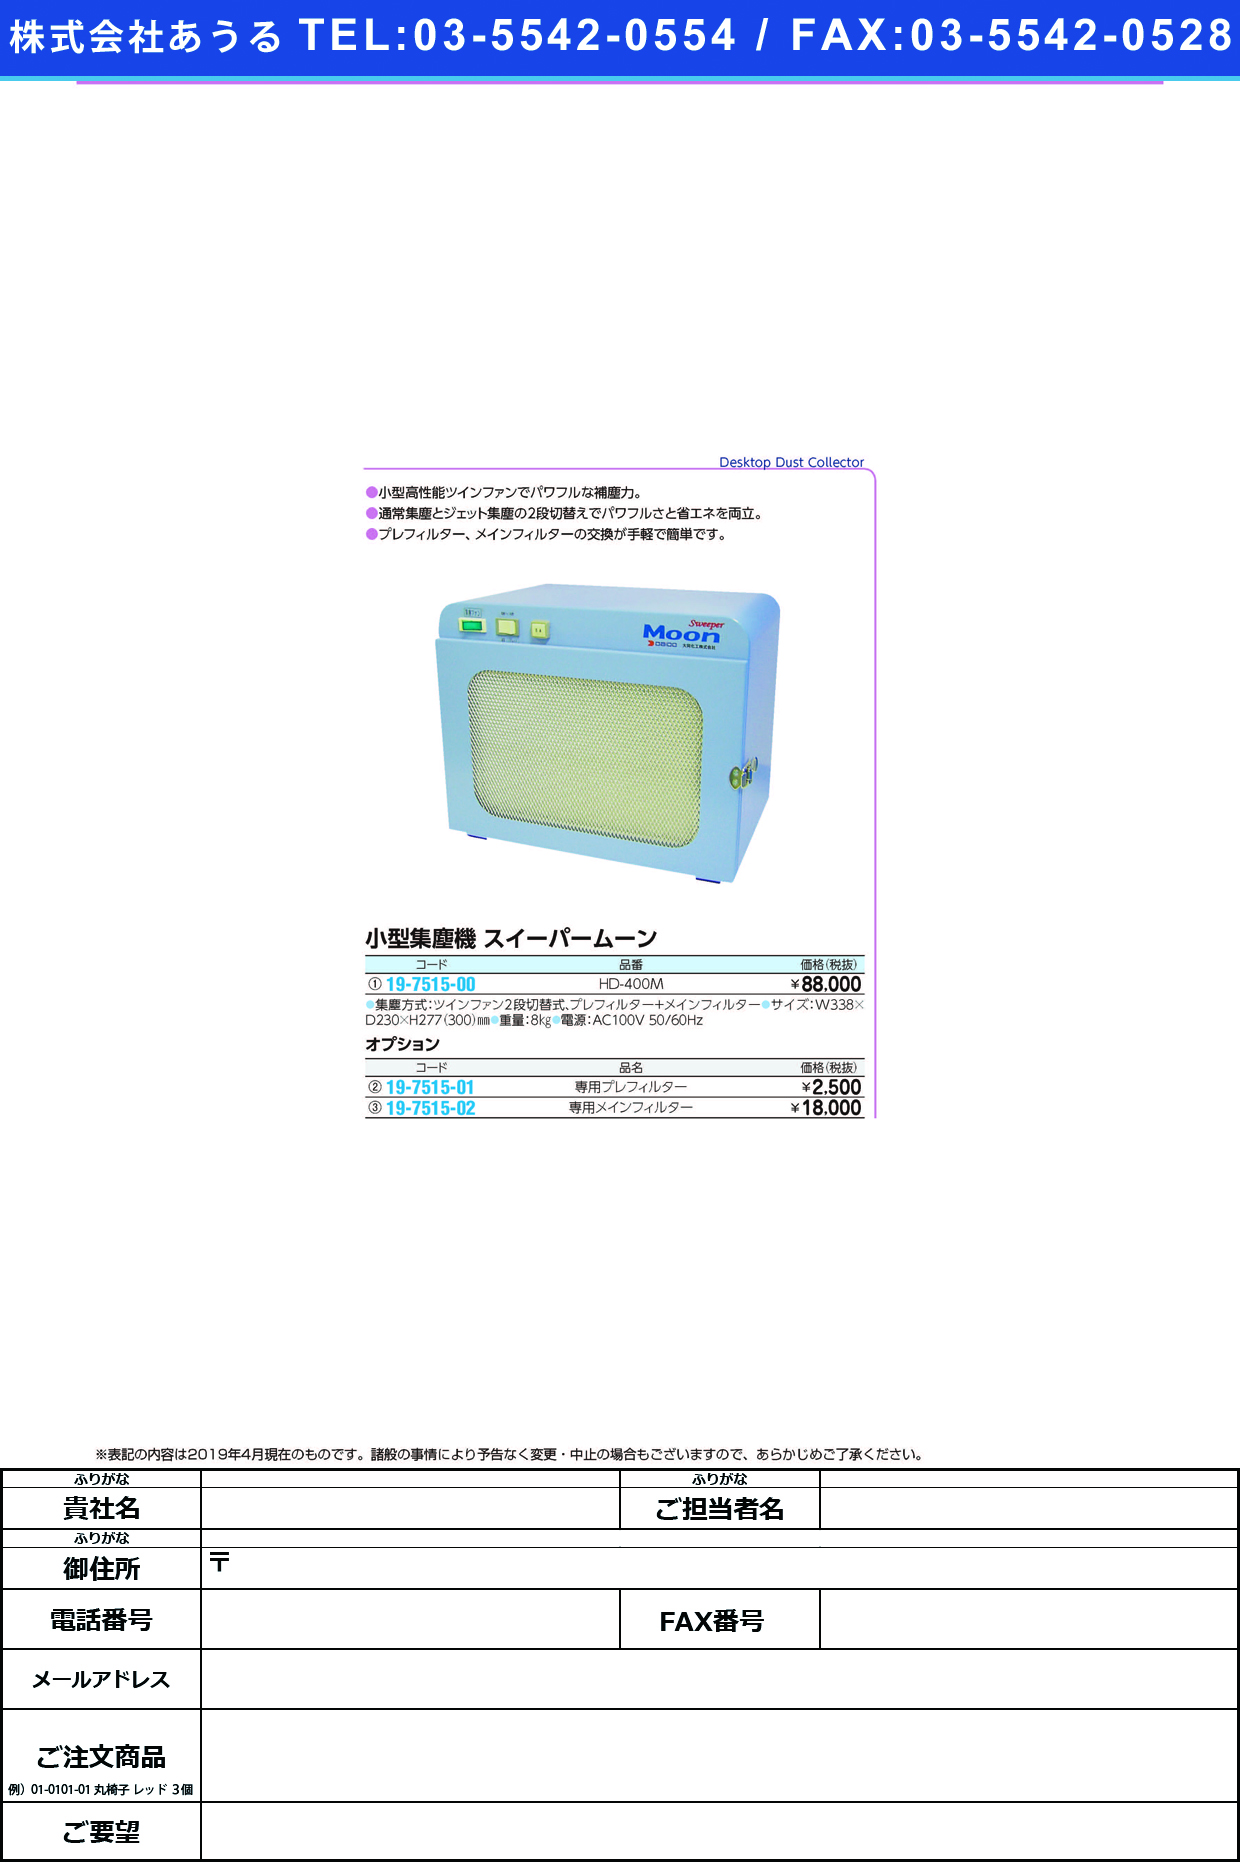 (19-7515-00)小型集塵機スイーパームーン HD-400M ｺｶﾞﾀｼｭｳｼﾞﾝｷ(大同化工)【1台単位】【2019年カタログ商品】